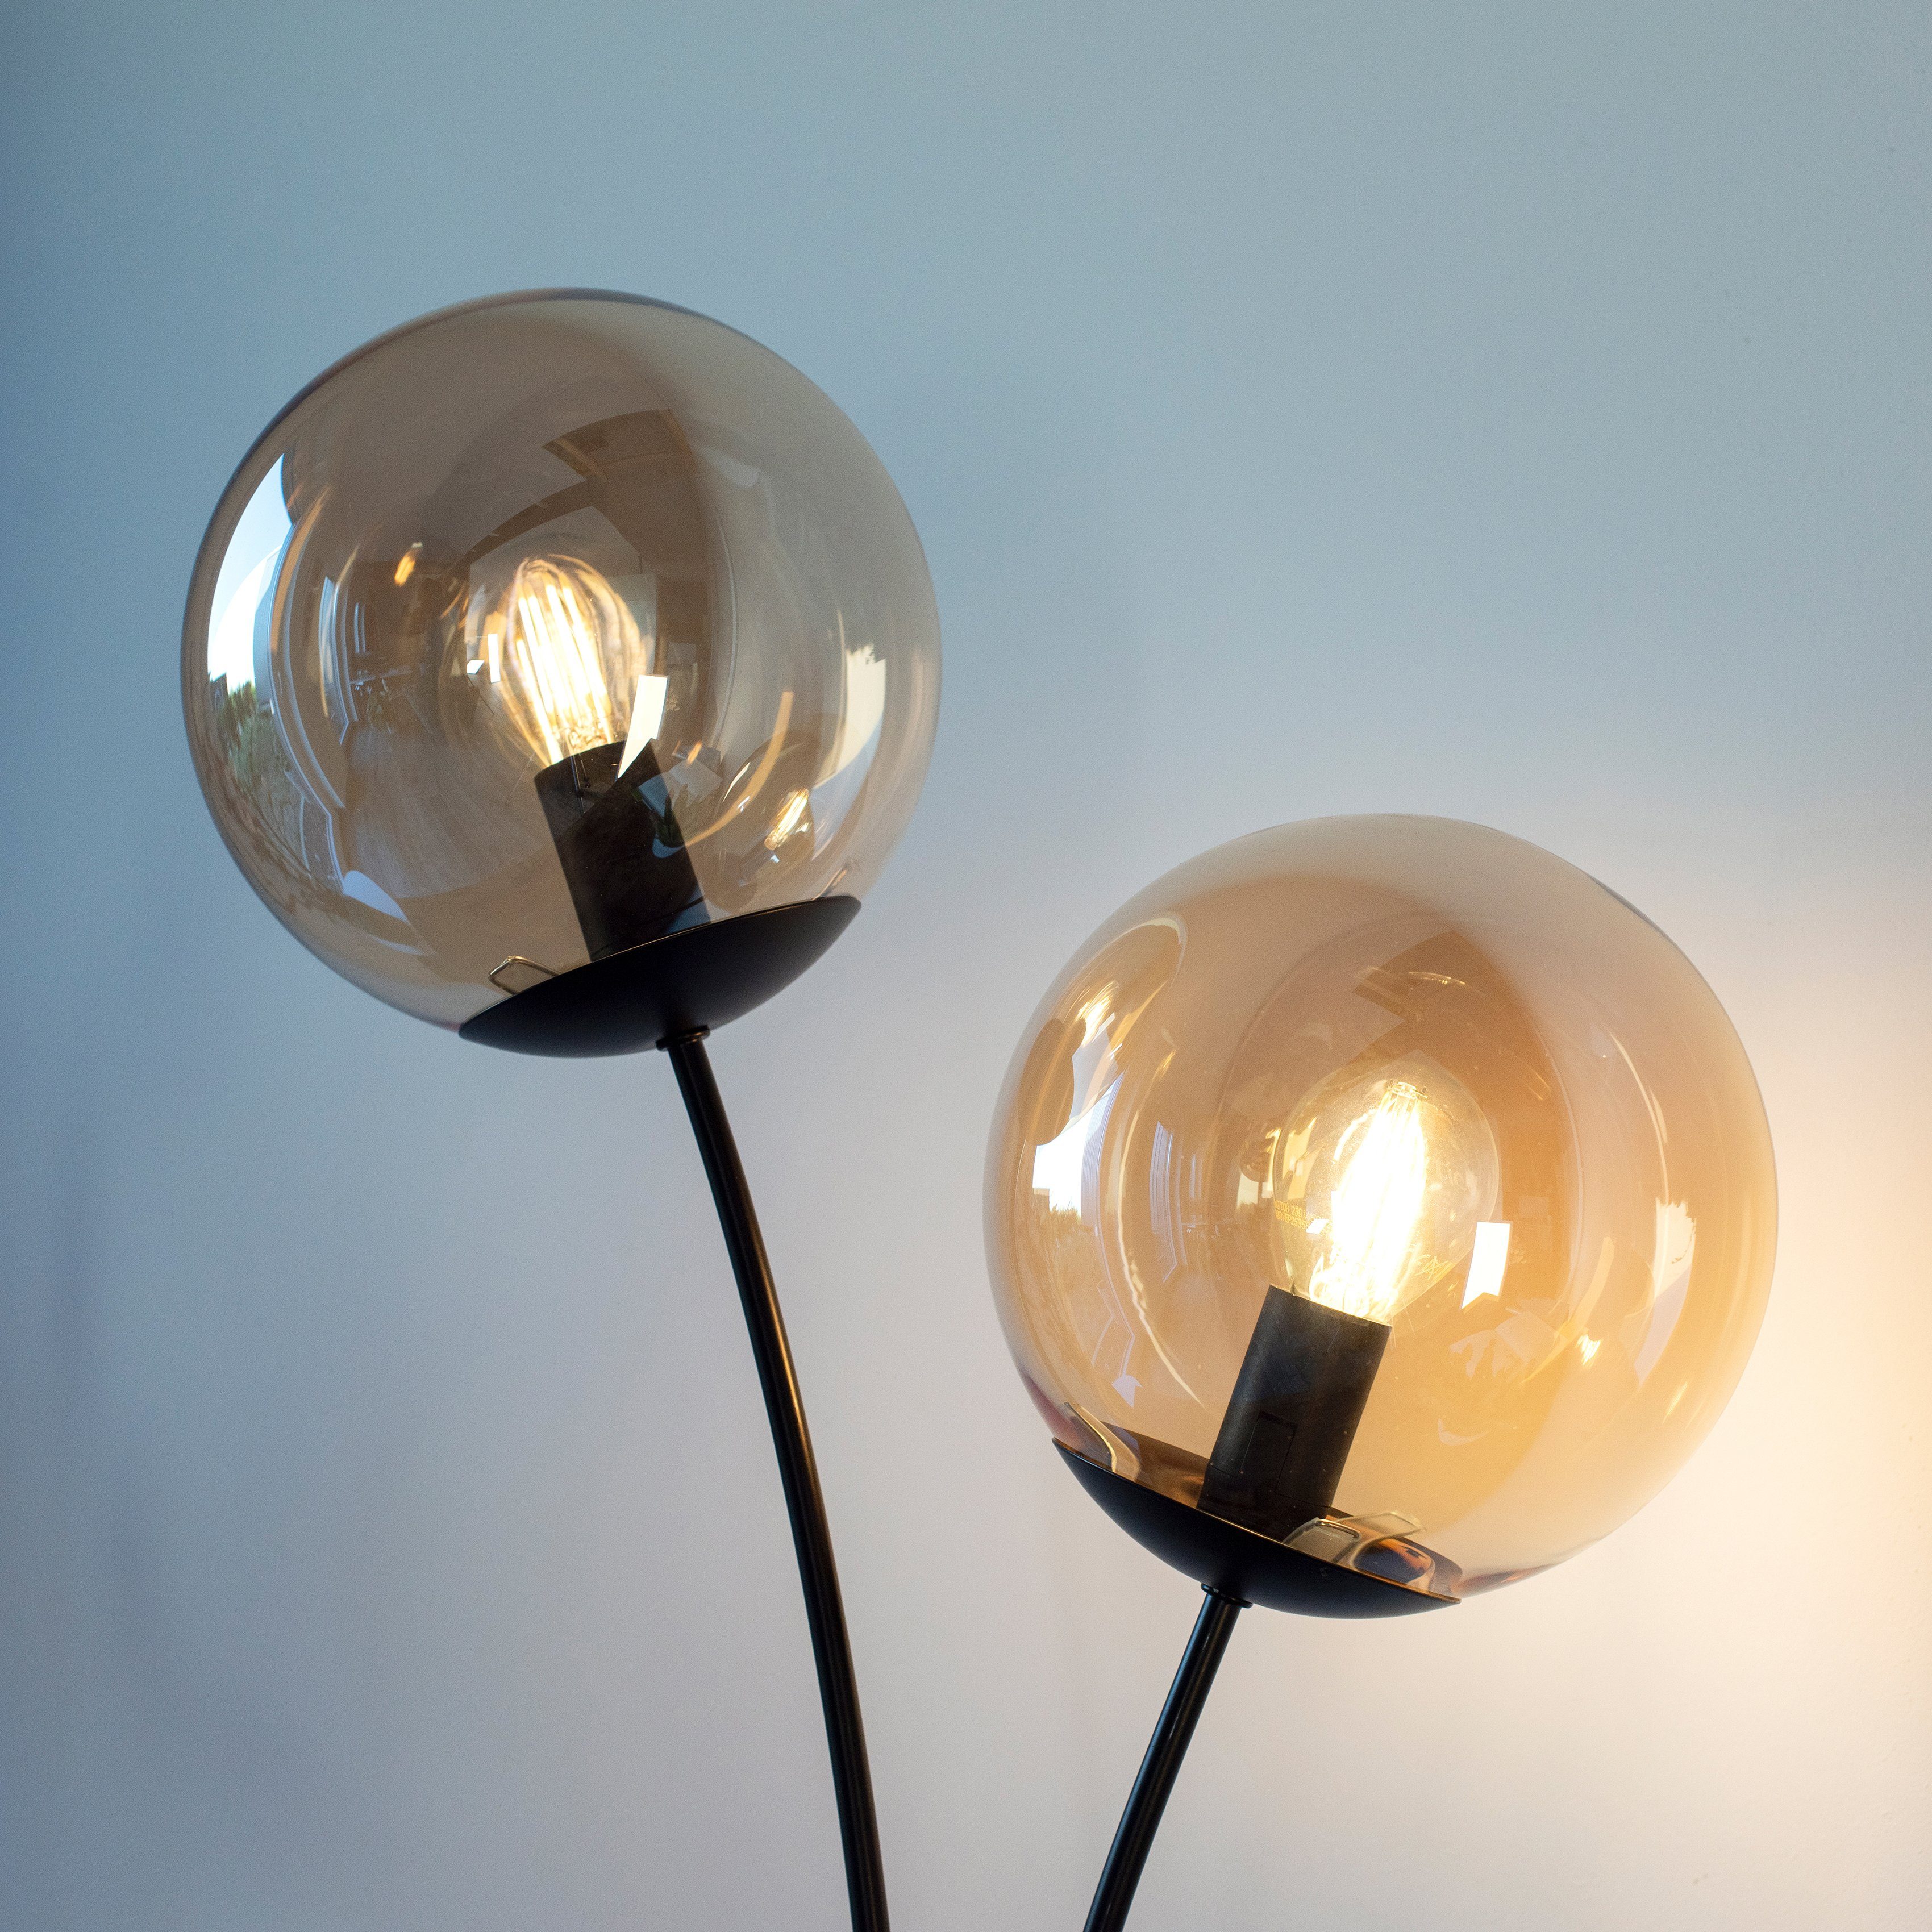 andas Stehlampe Nymölla, ohne mit Leuchtmittel, Oberfläche schwarz lackiert großen Glaskörpern, Ein-/Ausschalter, amberfarbigen